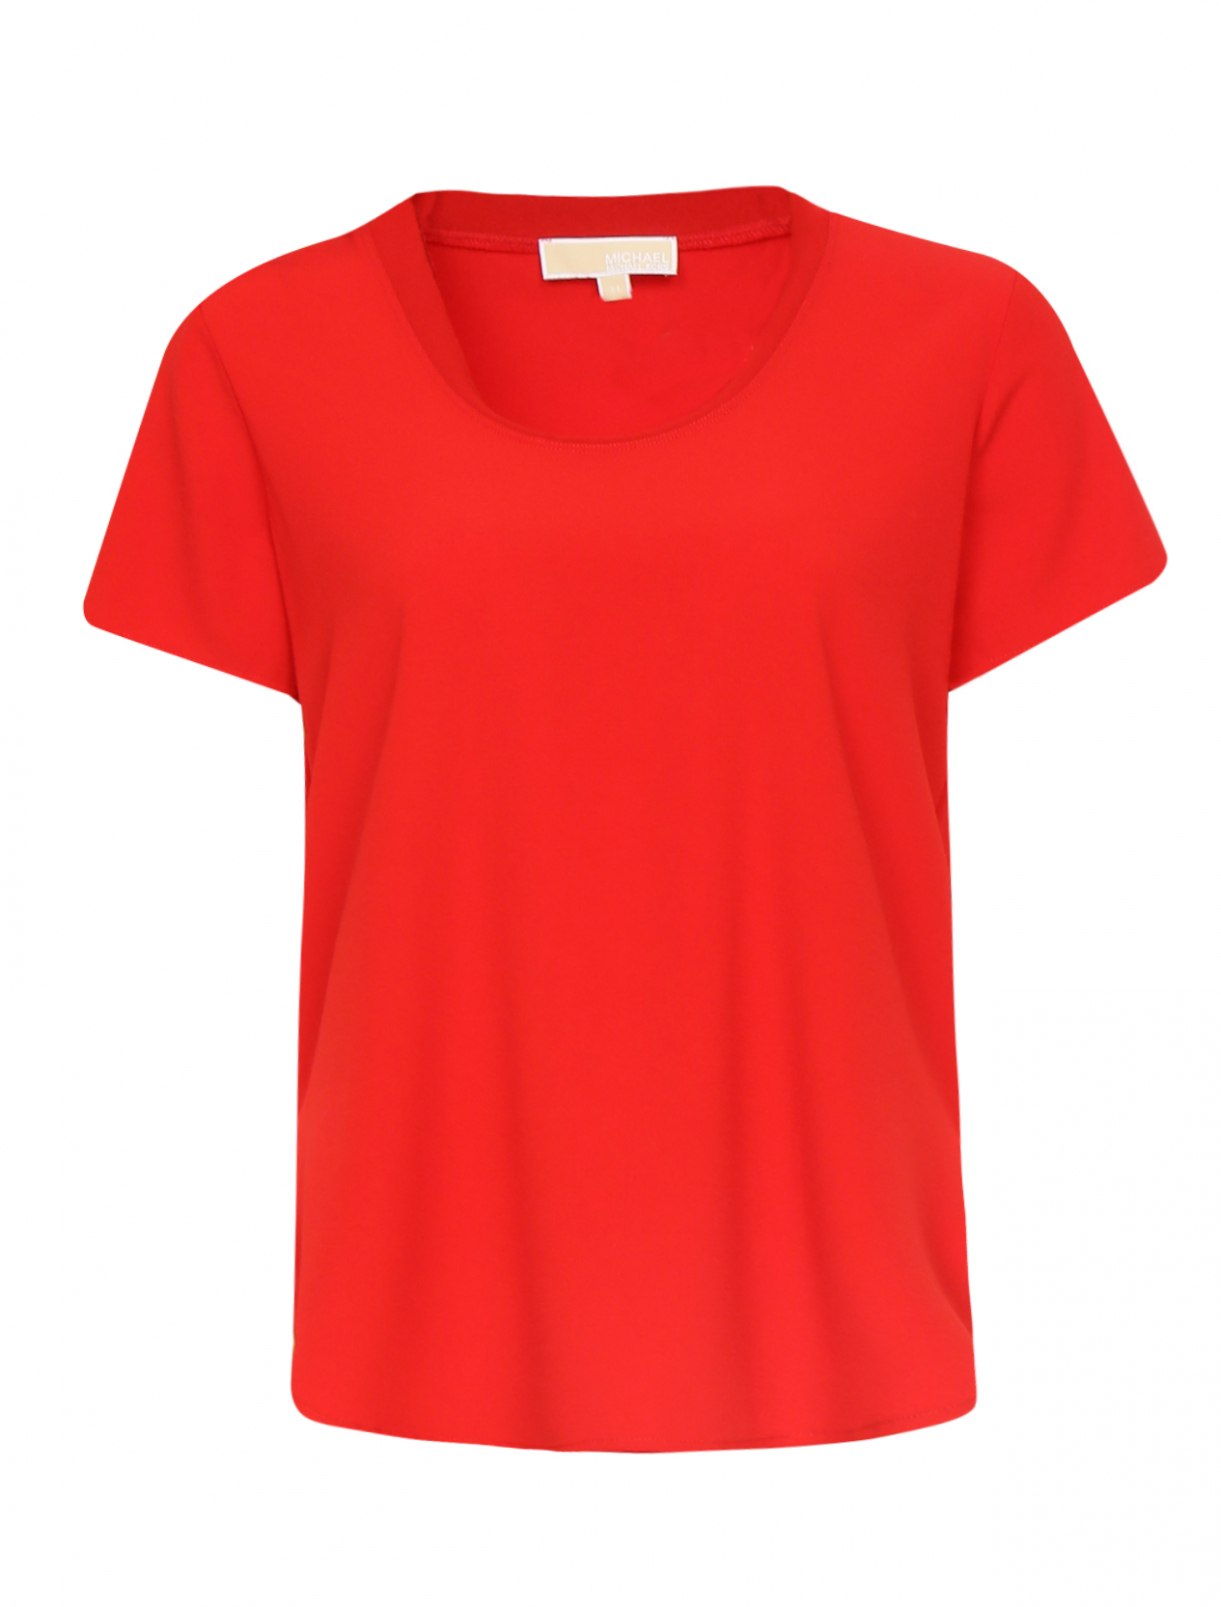 Где купить хорошую базовую футболку. Базовая футболка. Футболка женская однотонная. Красная футболка Базовая. Футболка белая однотонная.